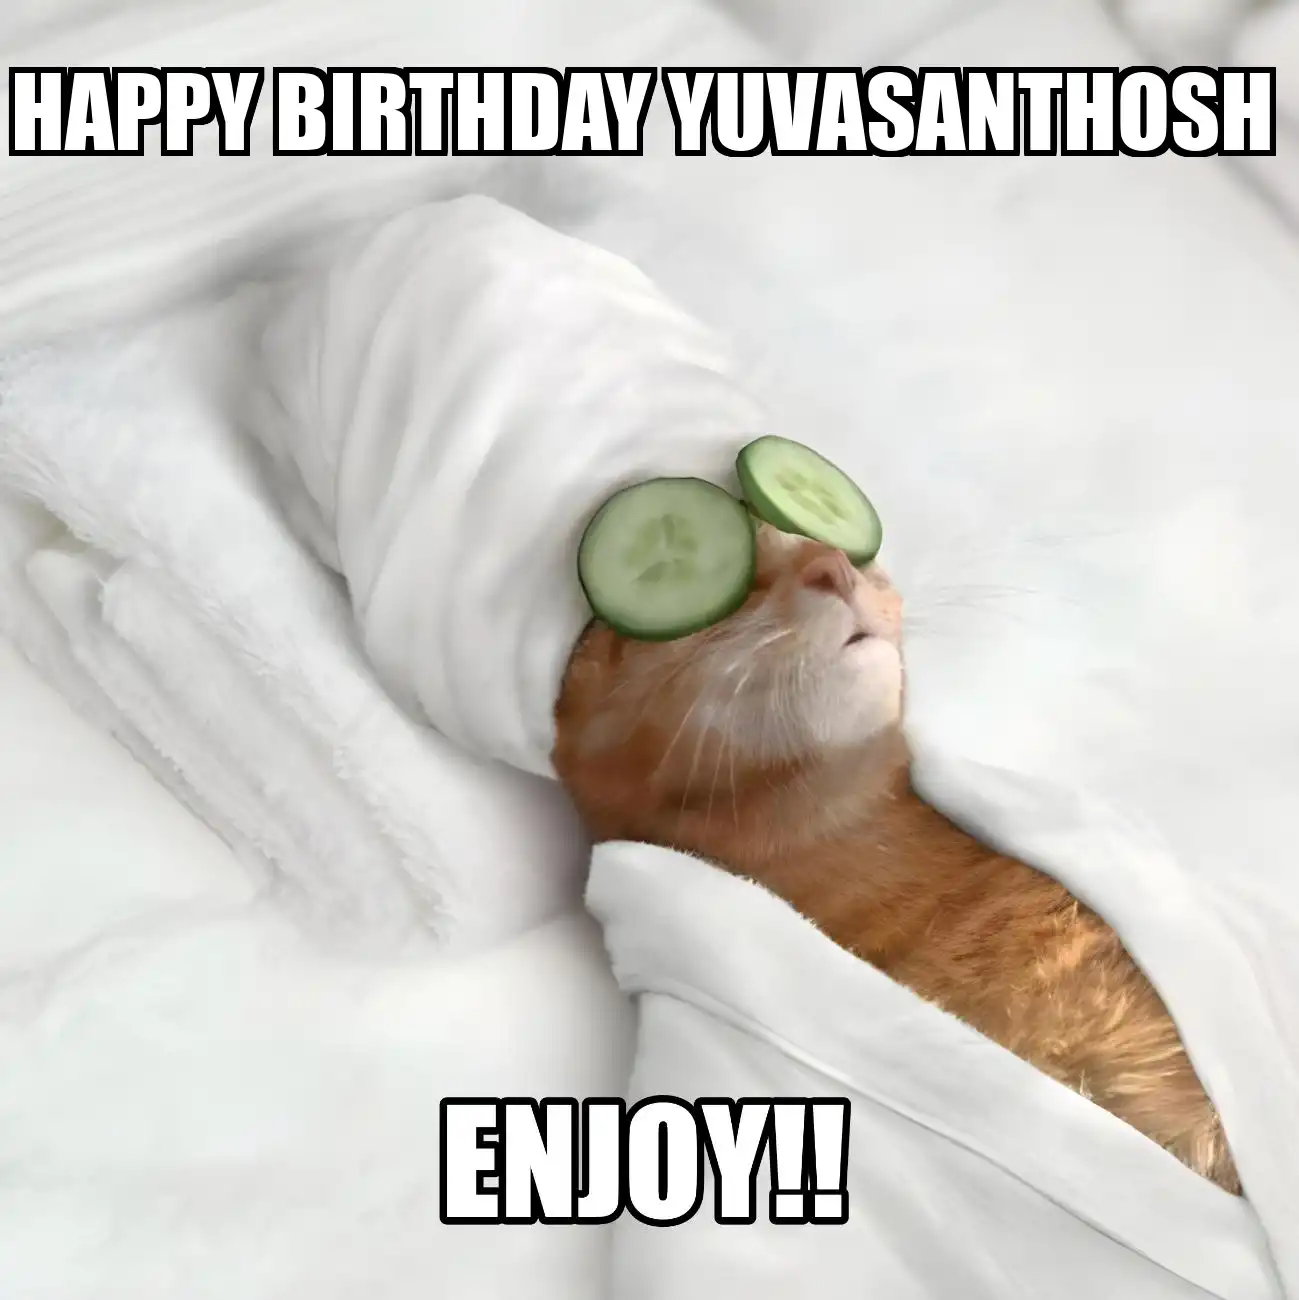 Happy Birthday Yuvasanthosh Enjoy Cat Meme